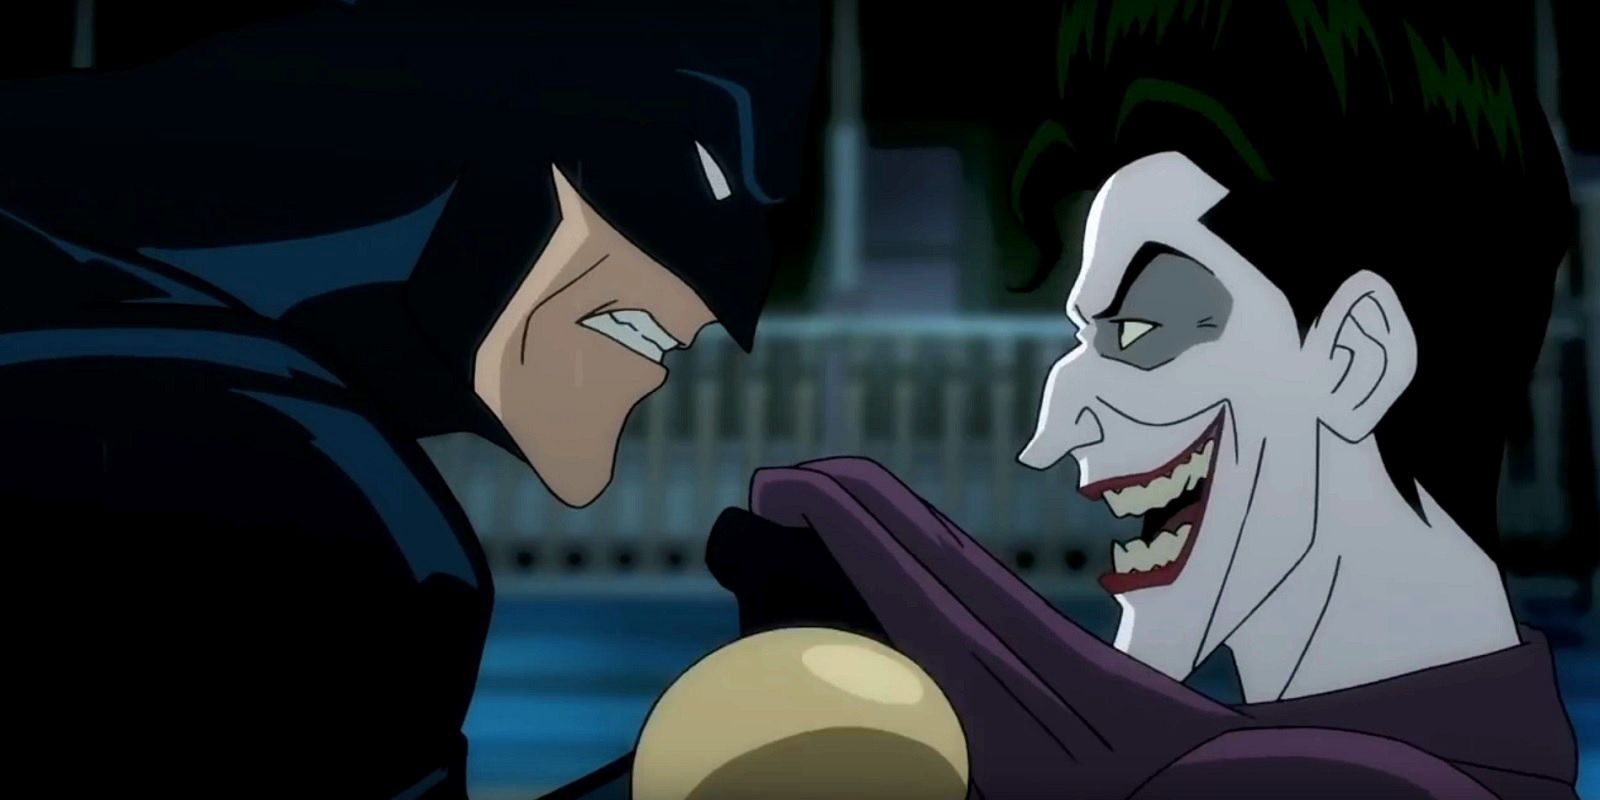 The Killing Joke - Batman threatens the Joker